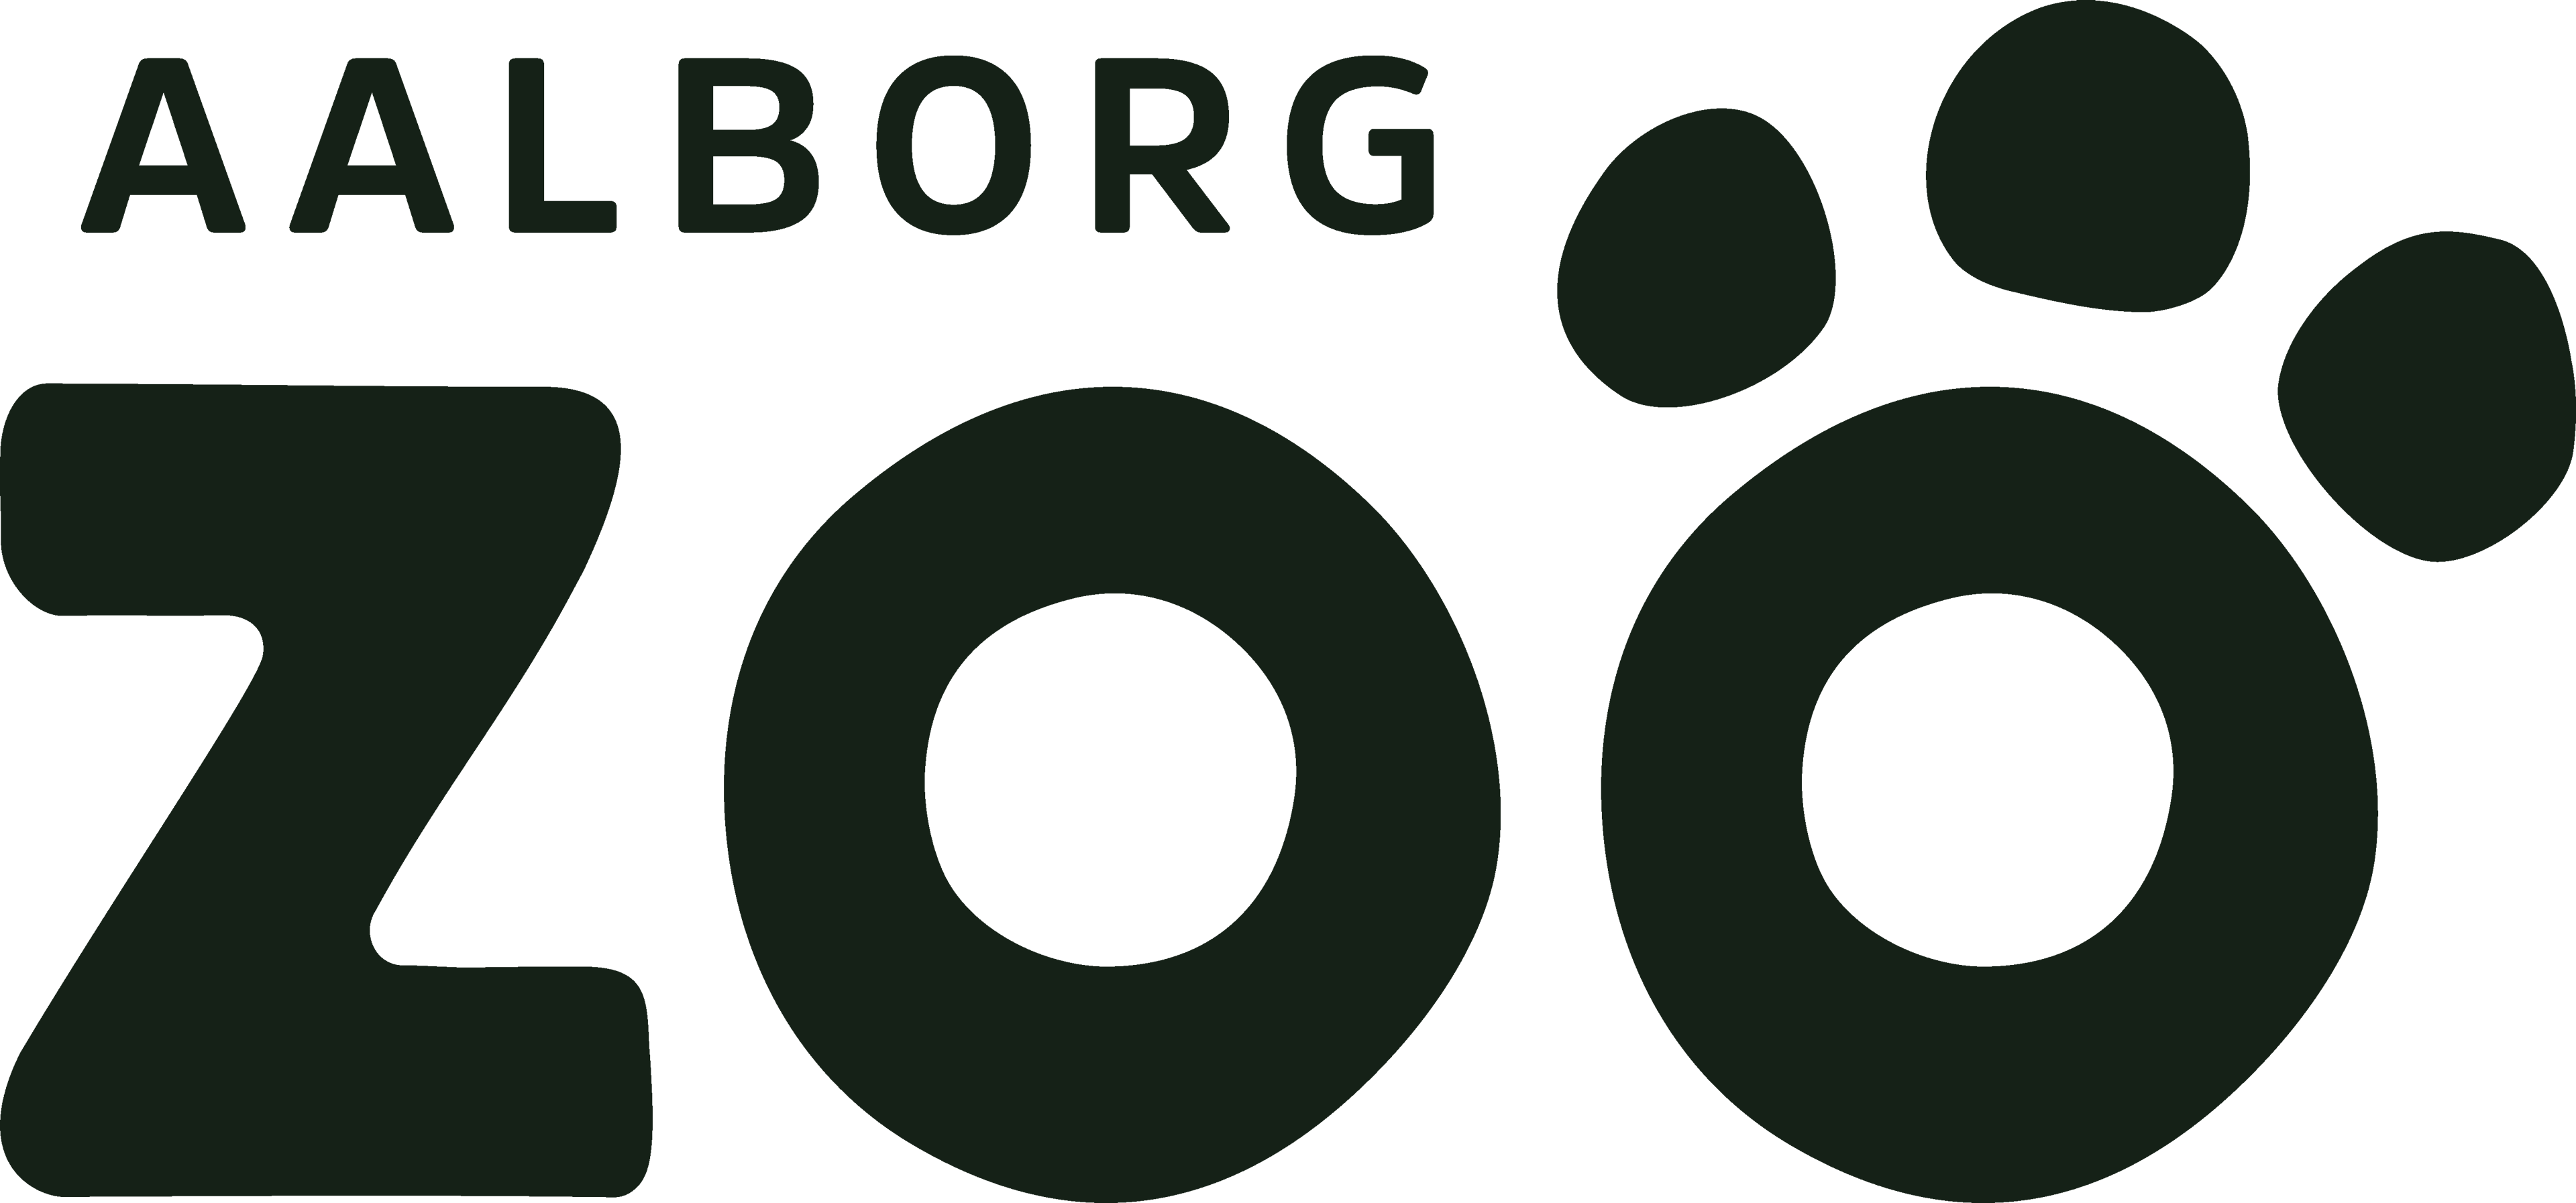 Få 10-15 % rabat på entrébilletter til Aalborg ZOO